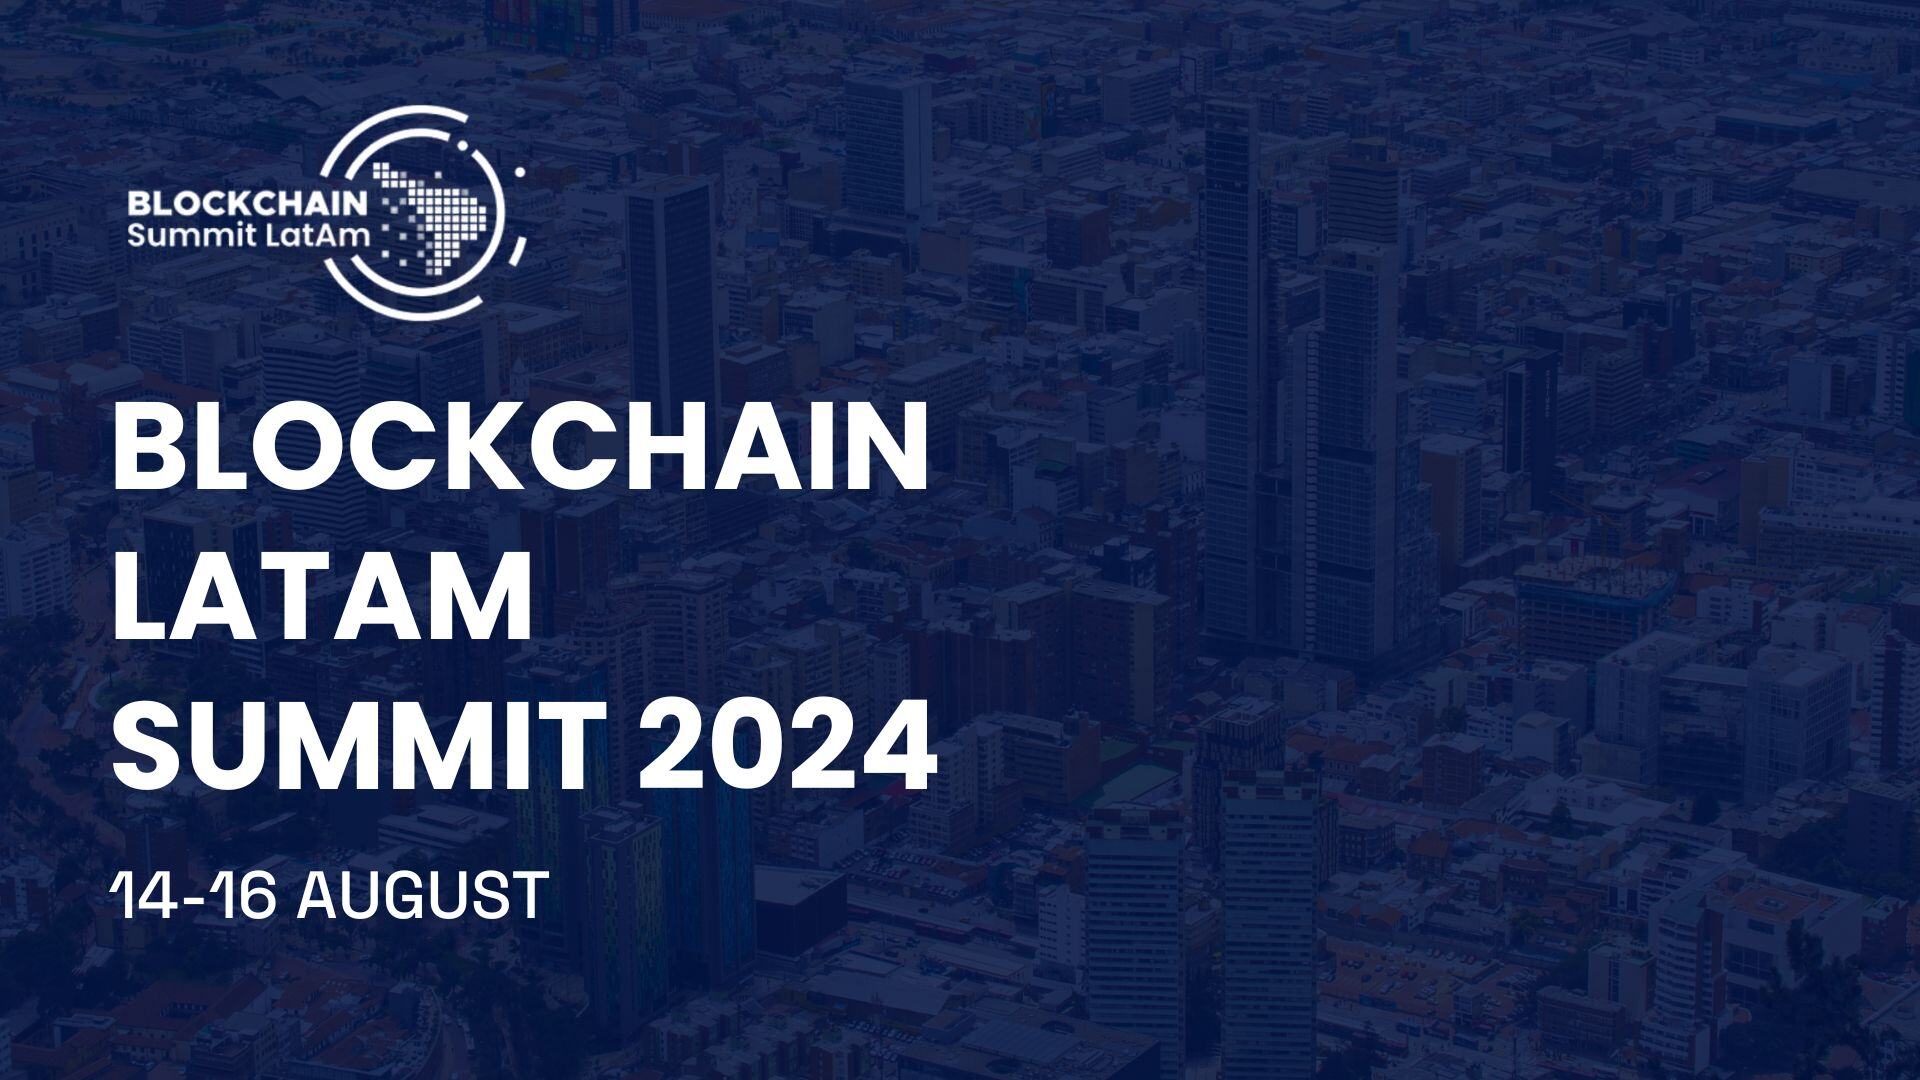 Blockchain Summit Latam 2024